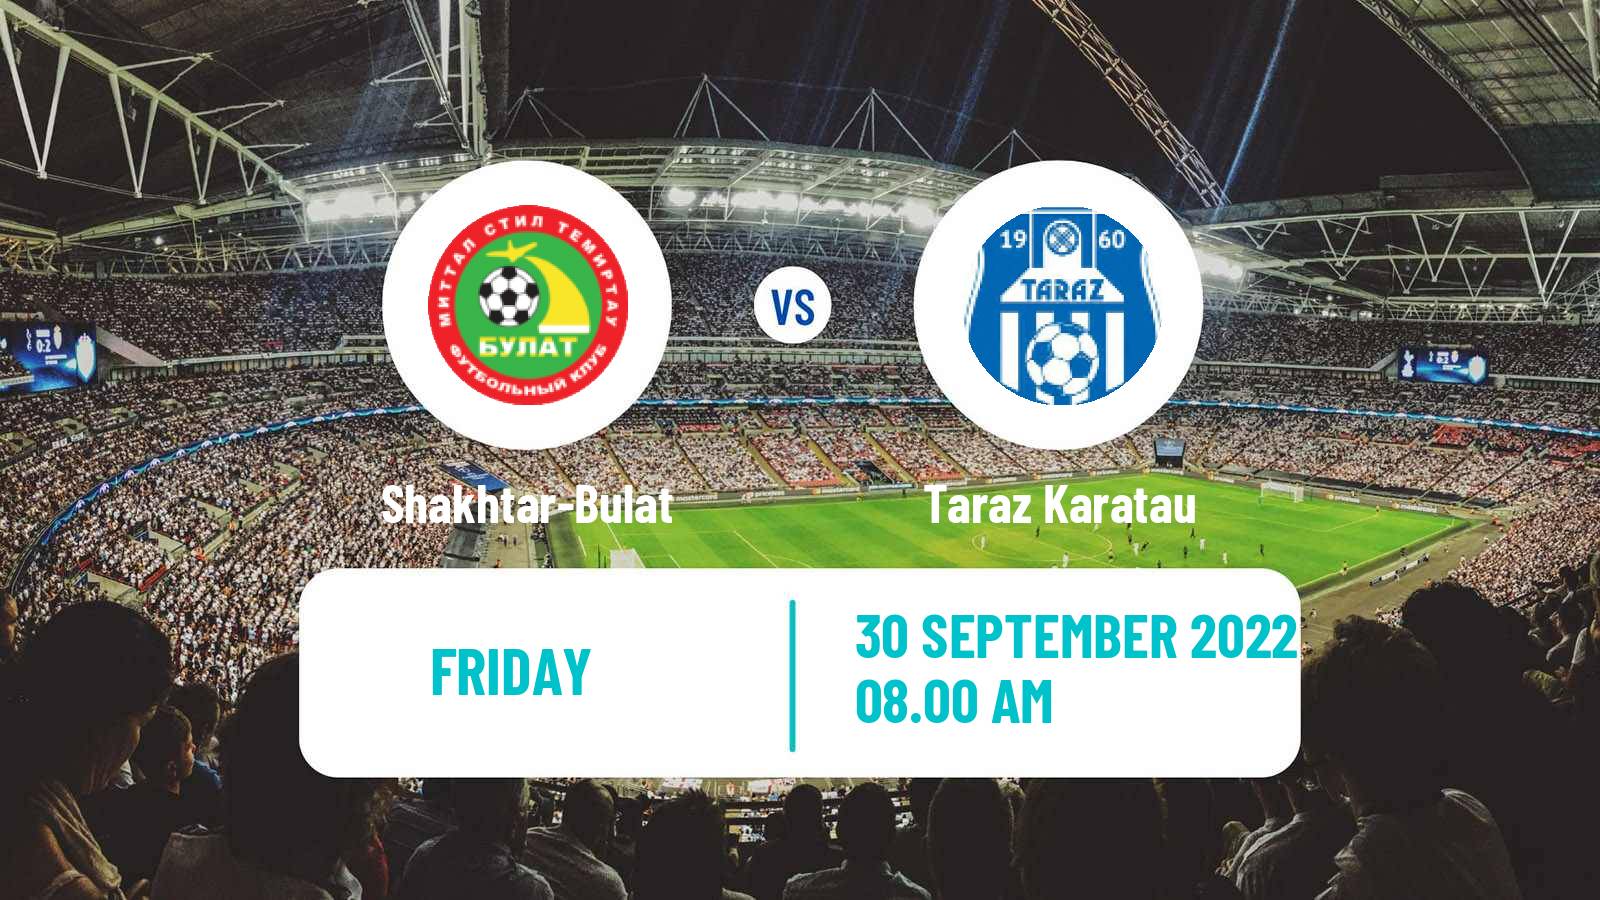 Soccer Kazakh First Division Shakhtar-Bulat - Taraz Karatau